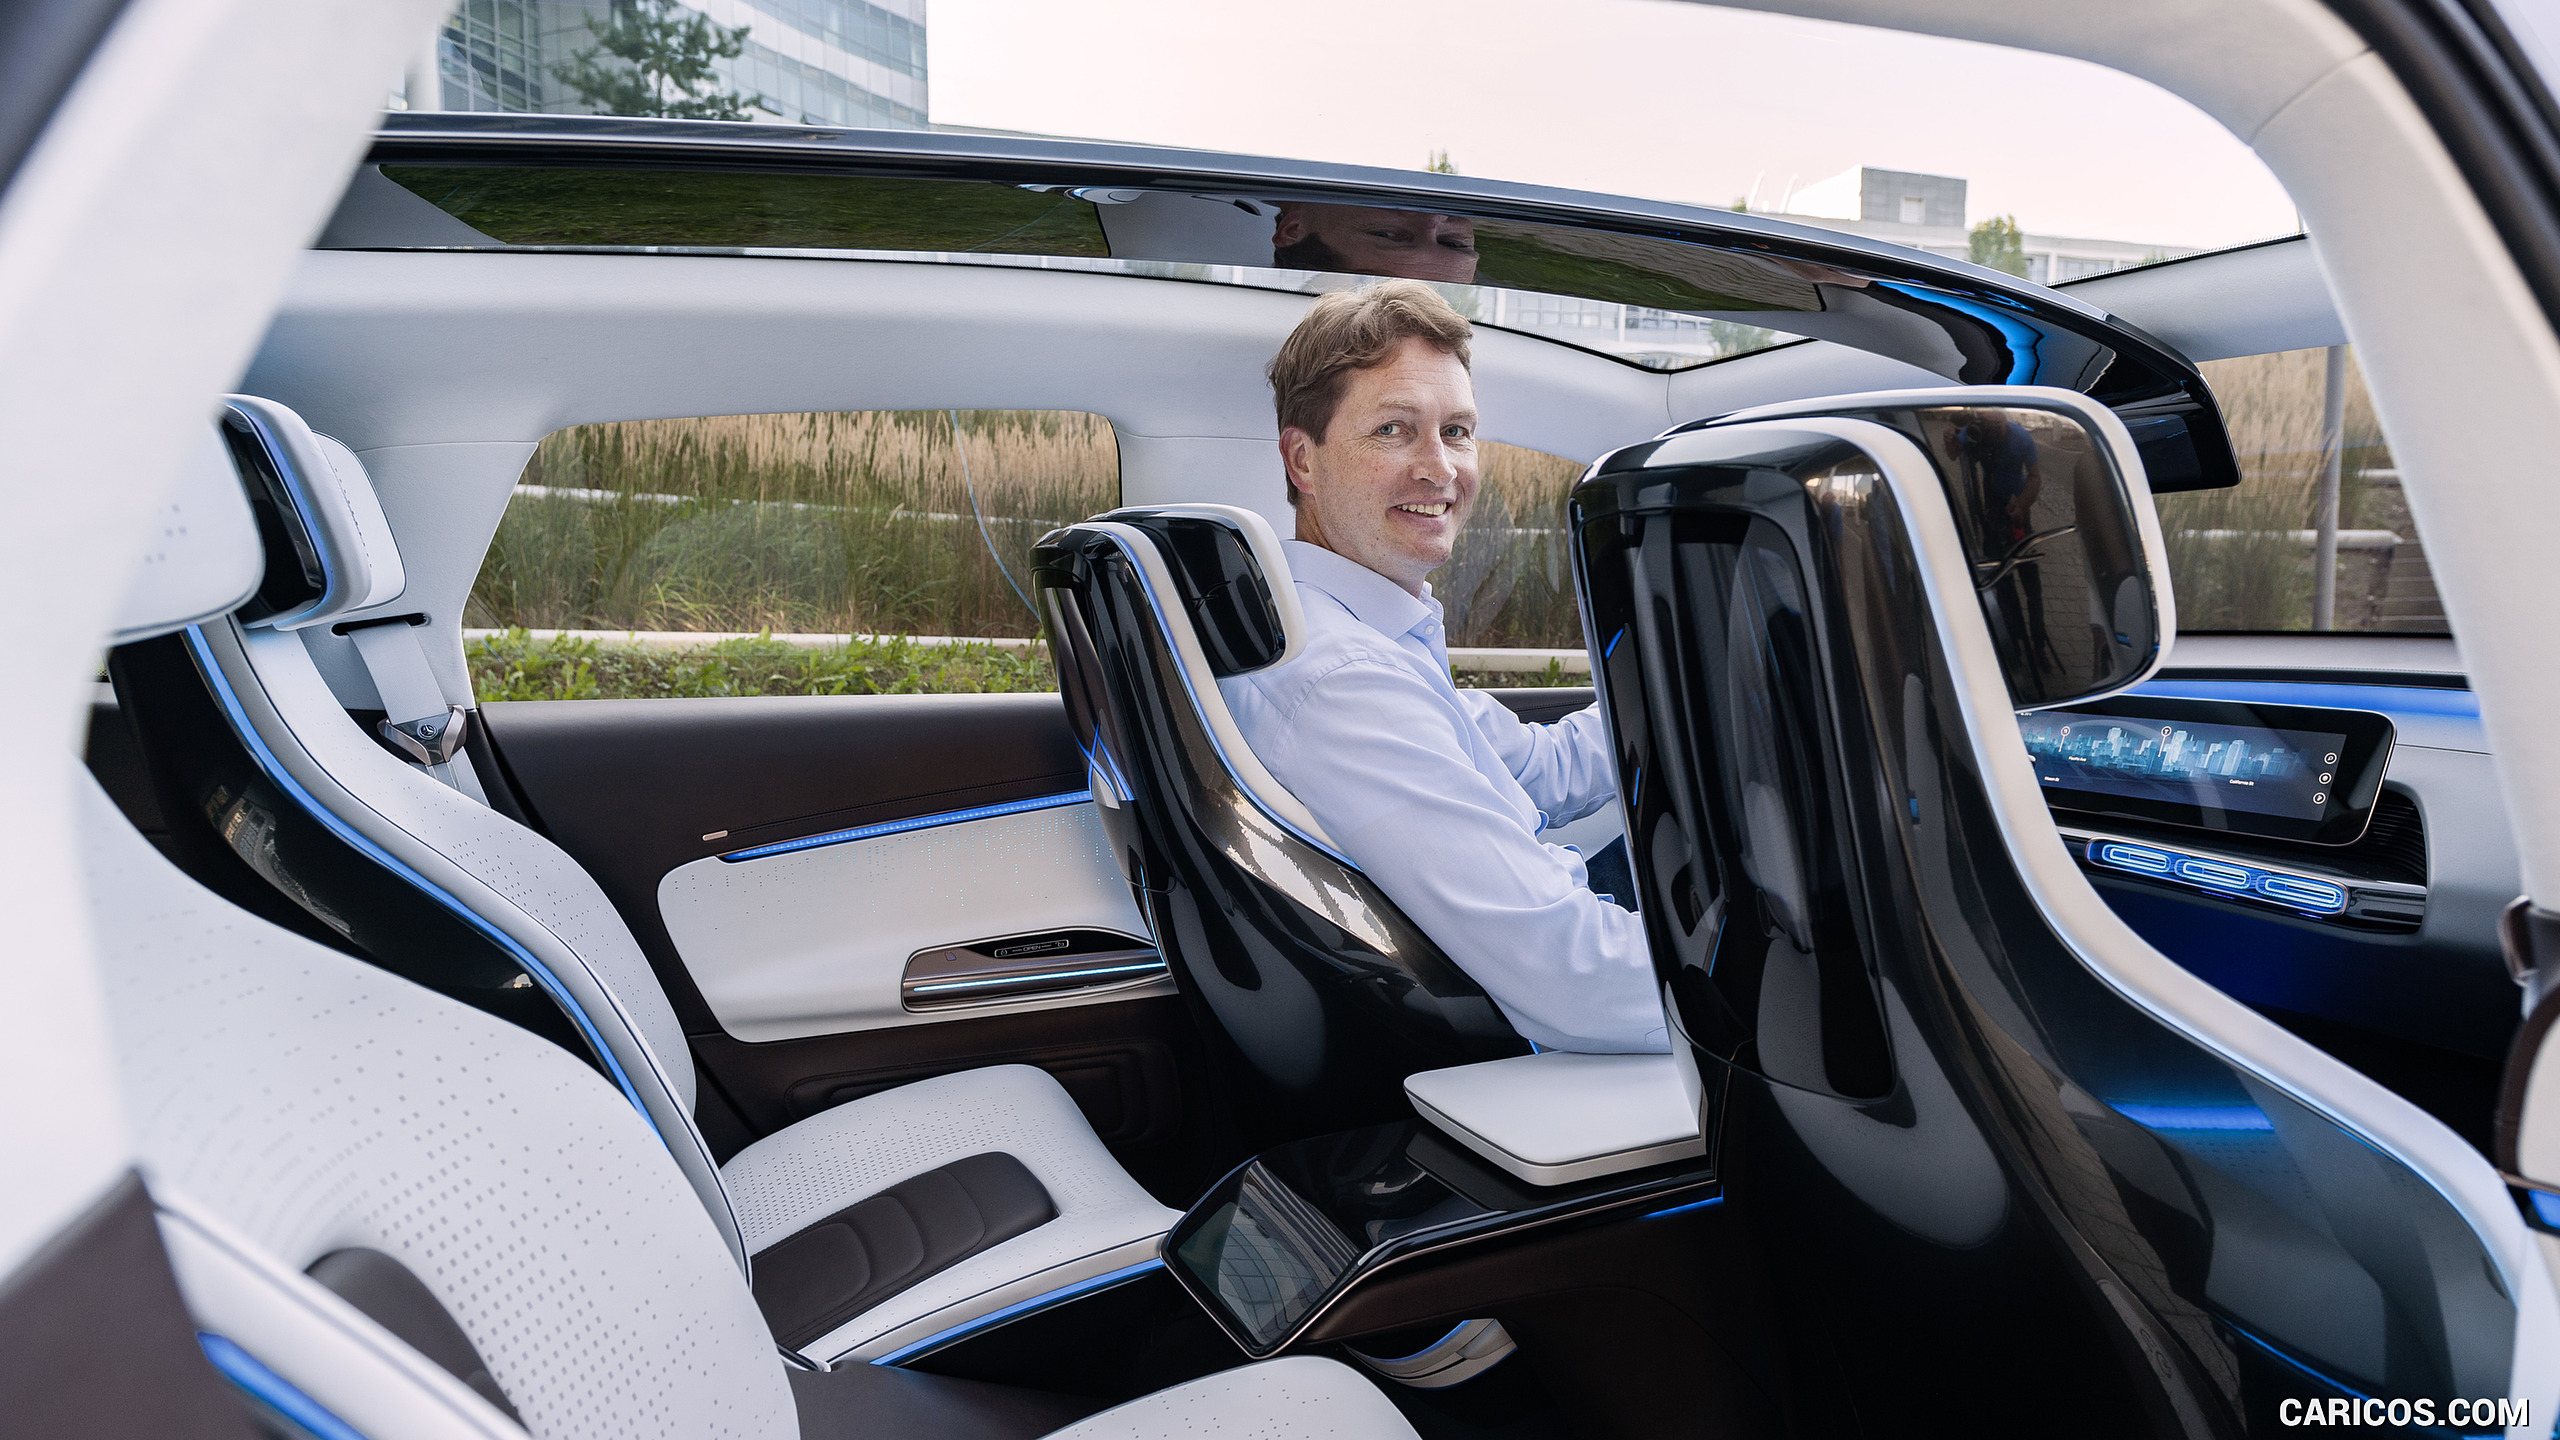 2016 Mercedes-Benz Generation EQ SUV Concept and Ola K..llenius - Interior, Seats, #24 of 50